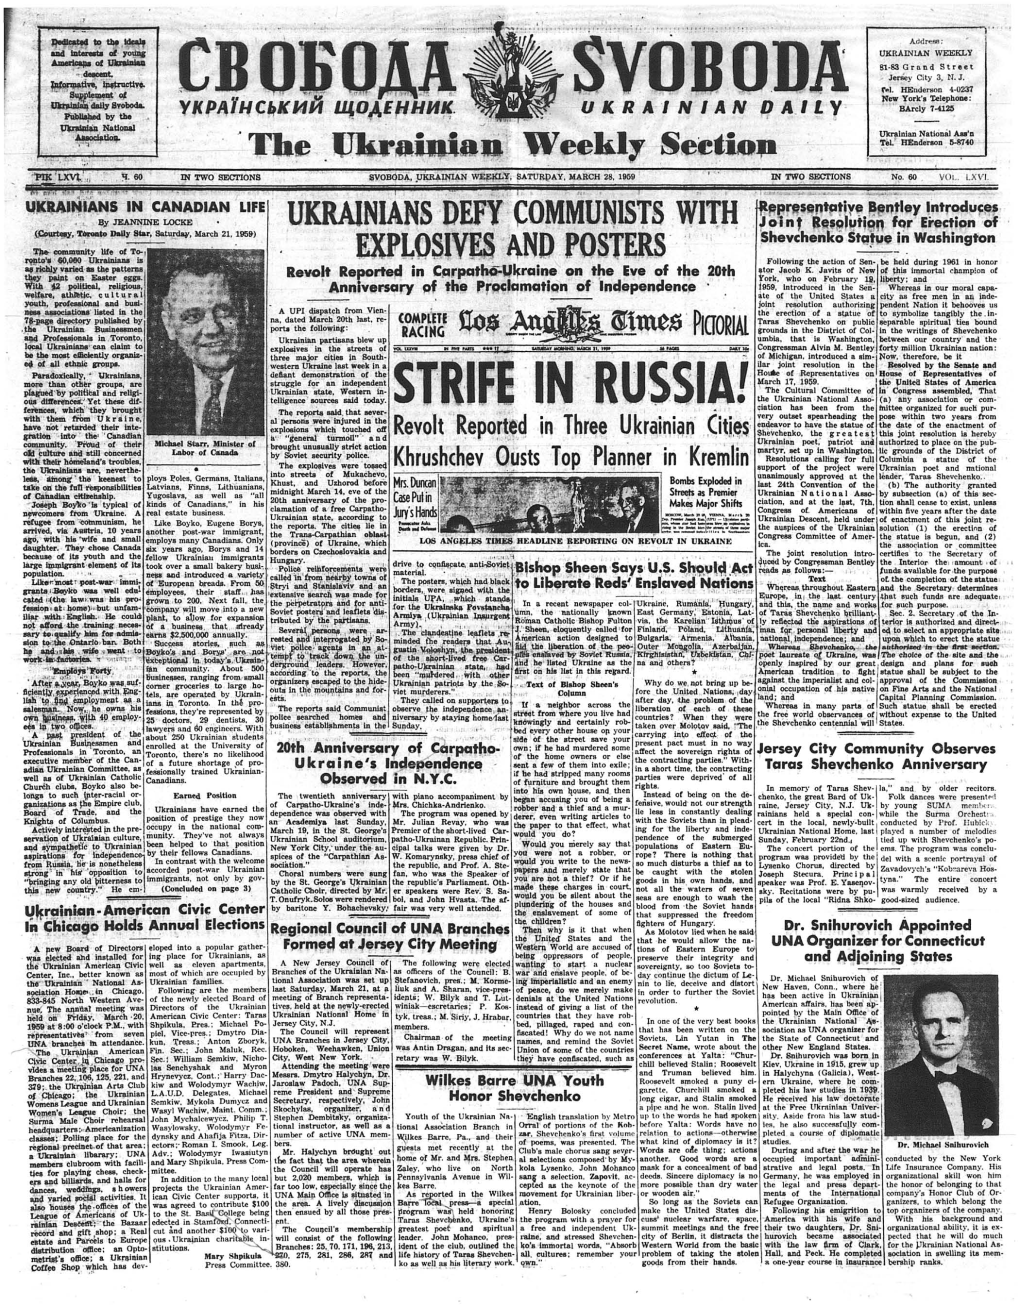 The Ukrainian Weekly 1959